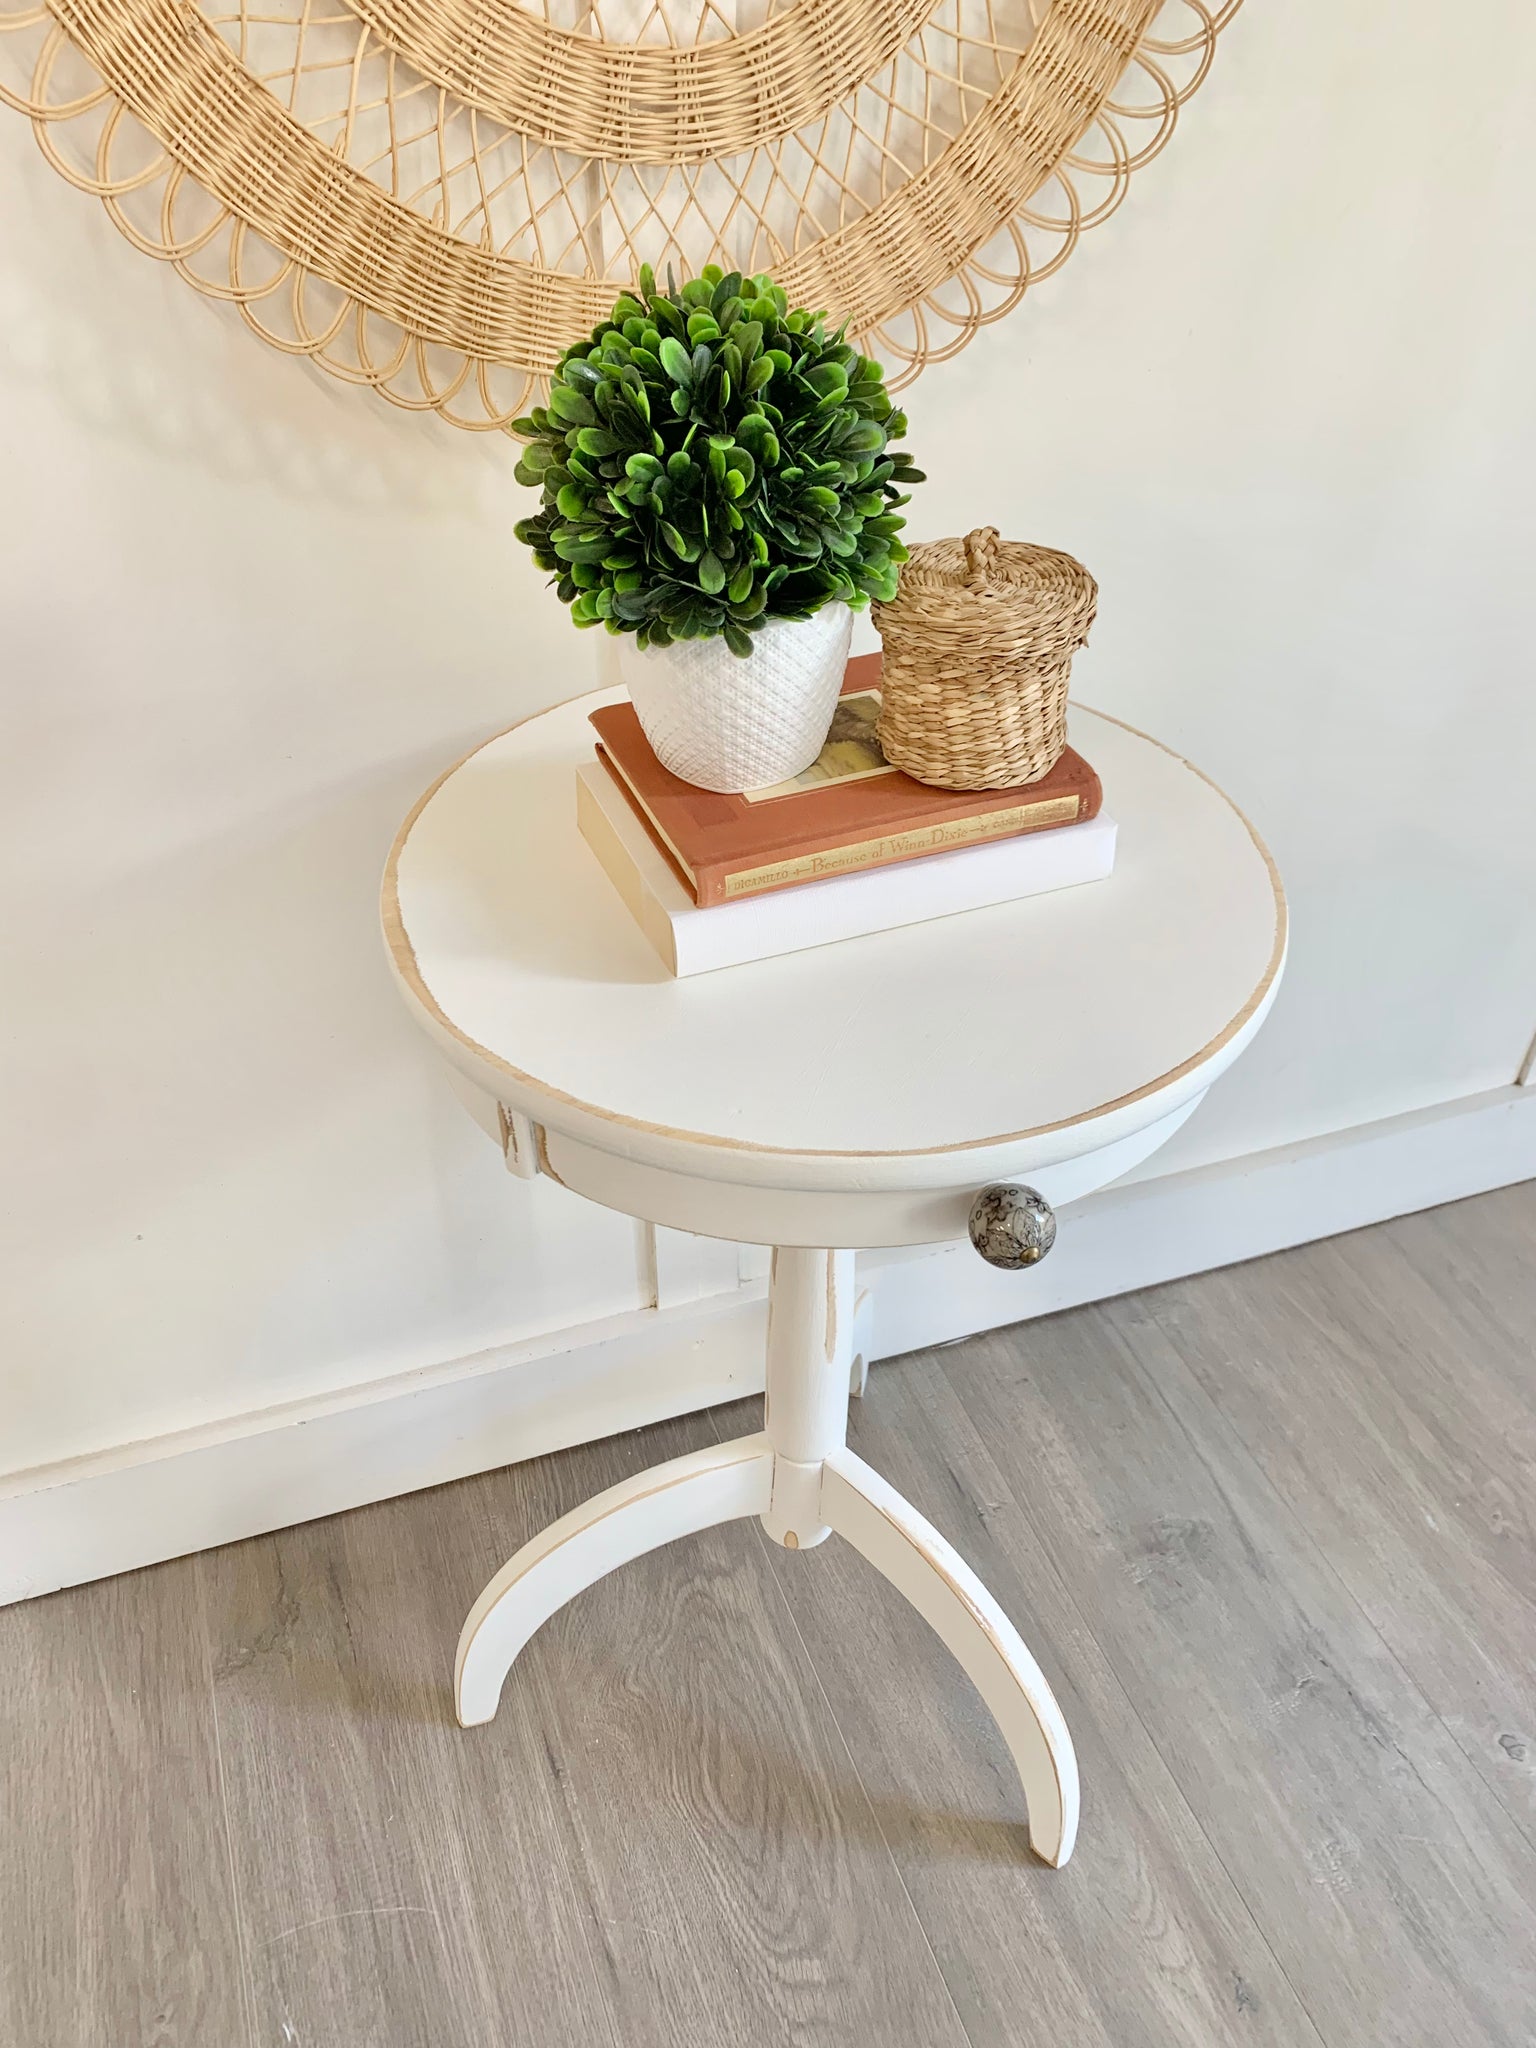 Gazebo white modern table with antique flair